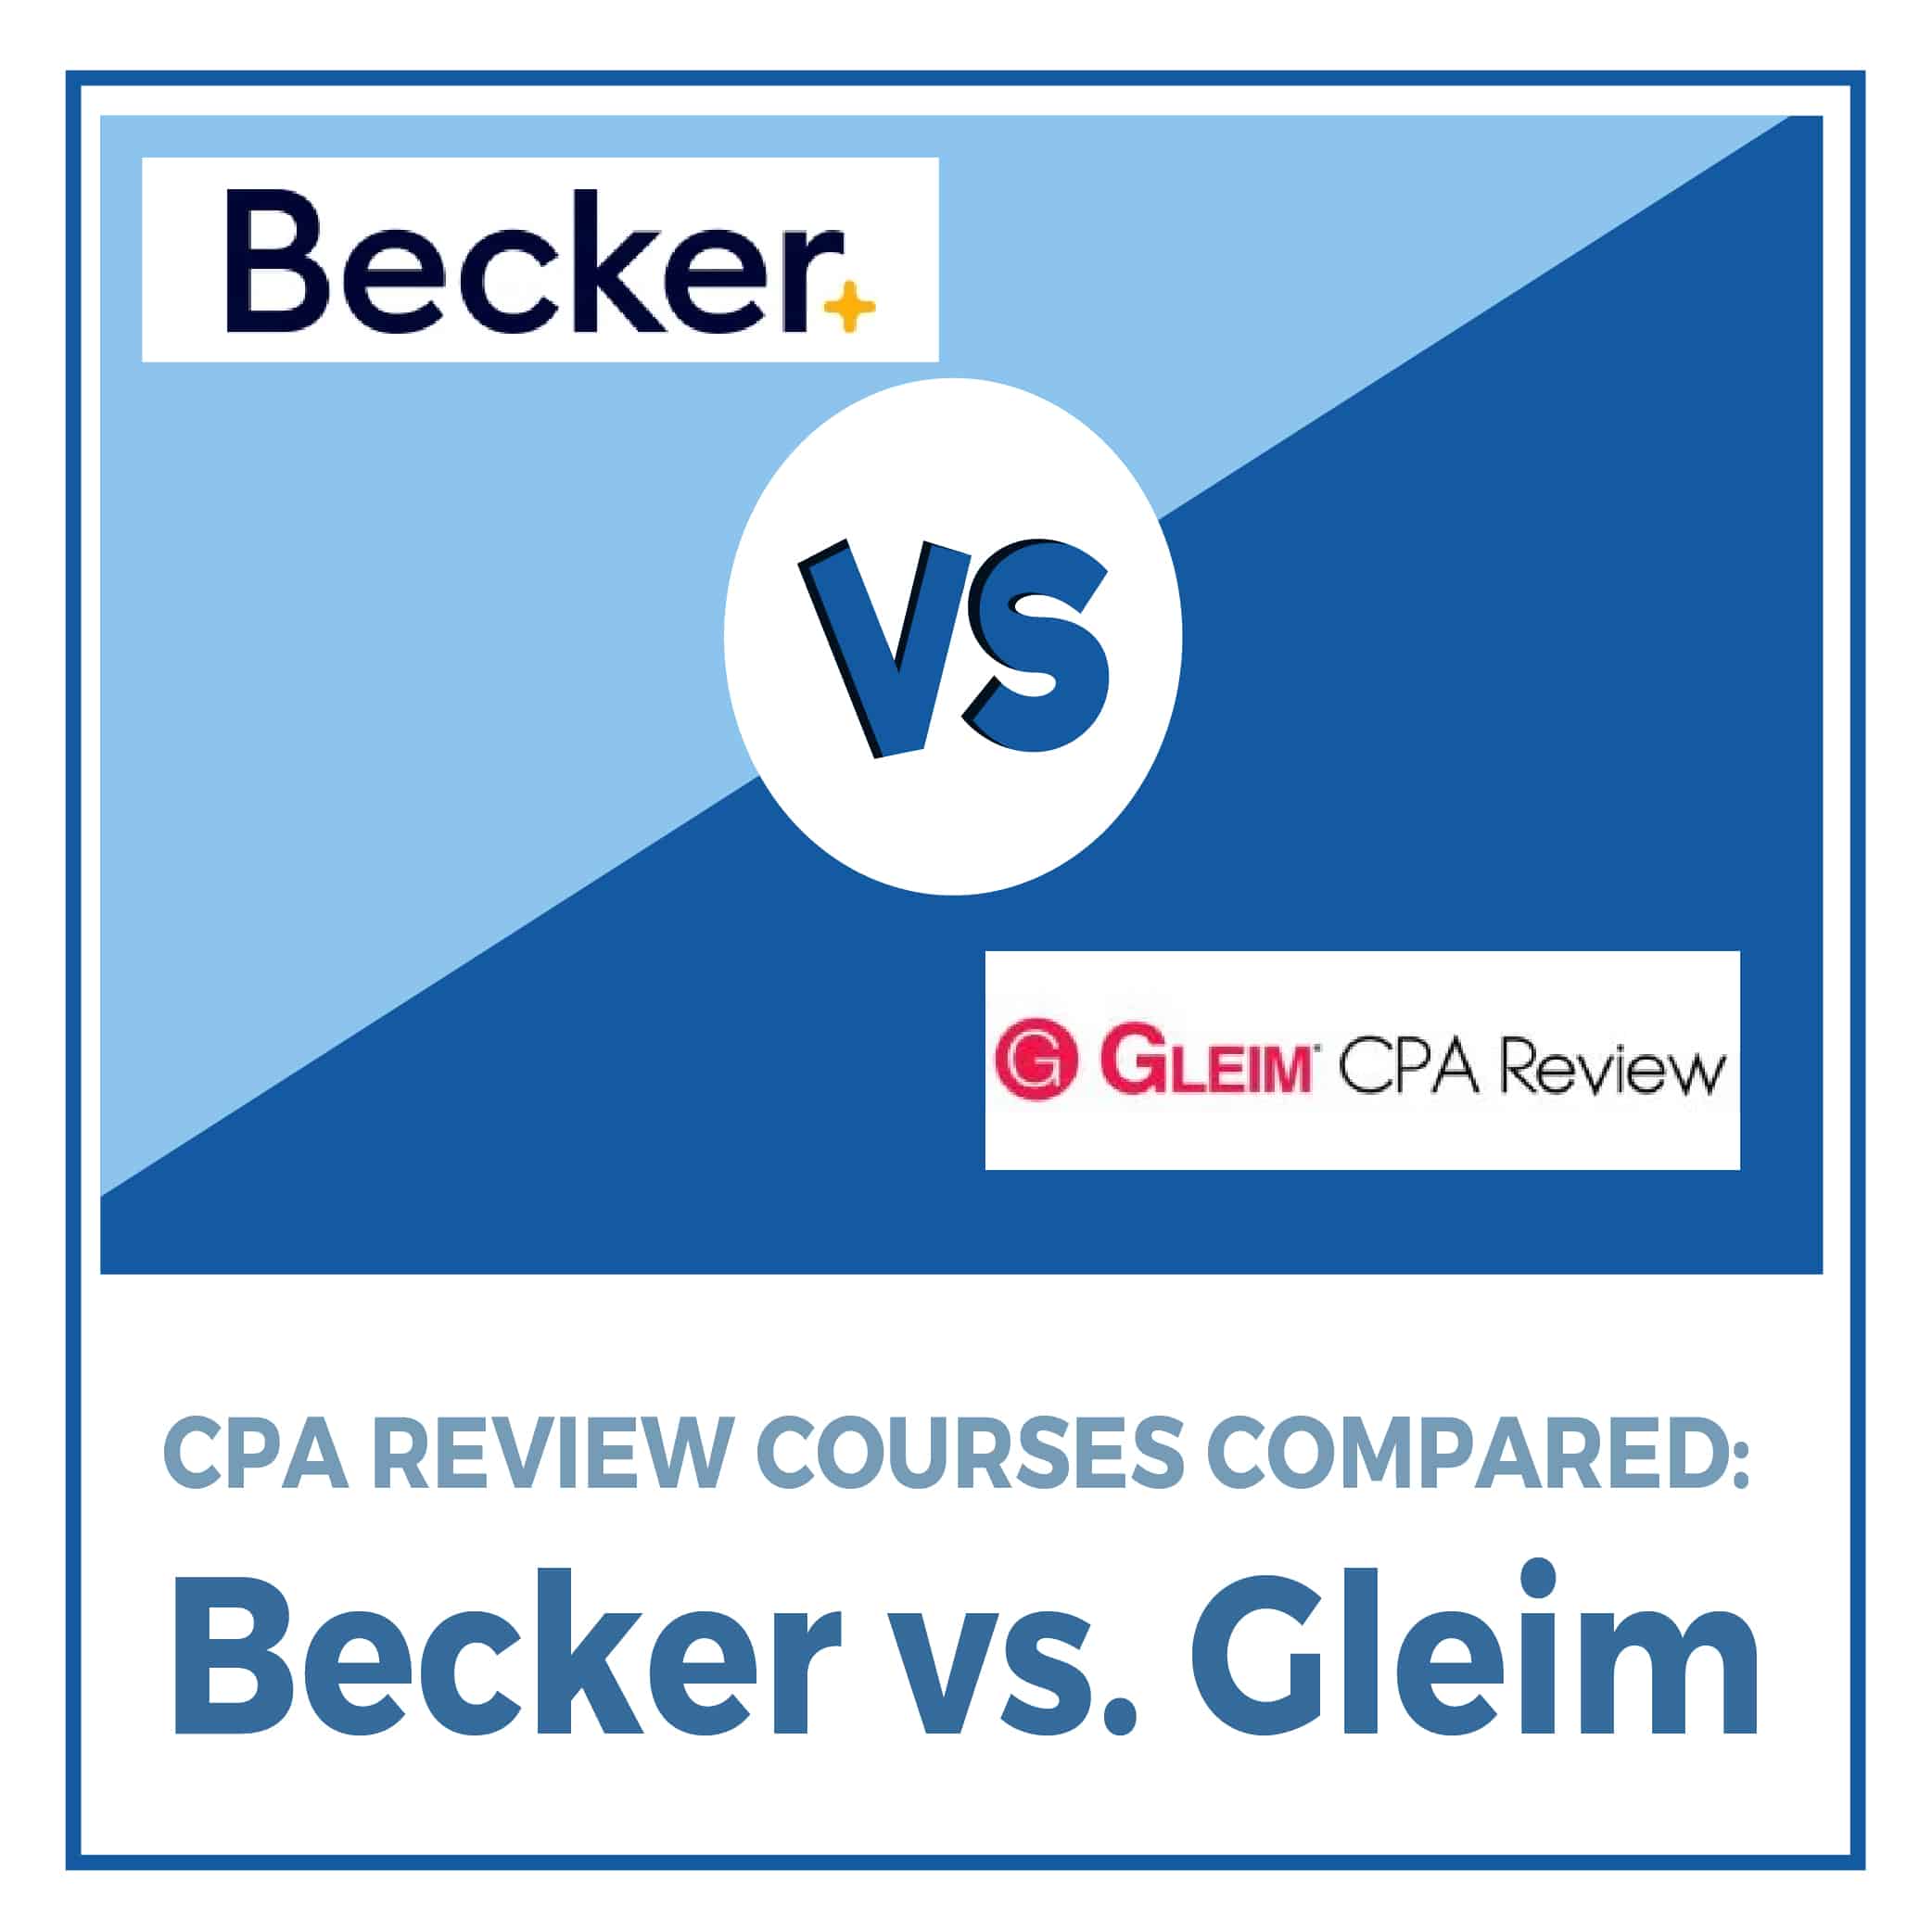 becker cpa final review